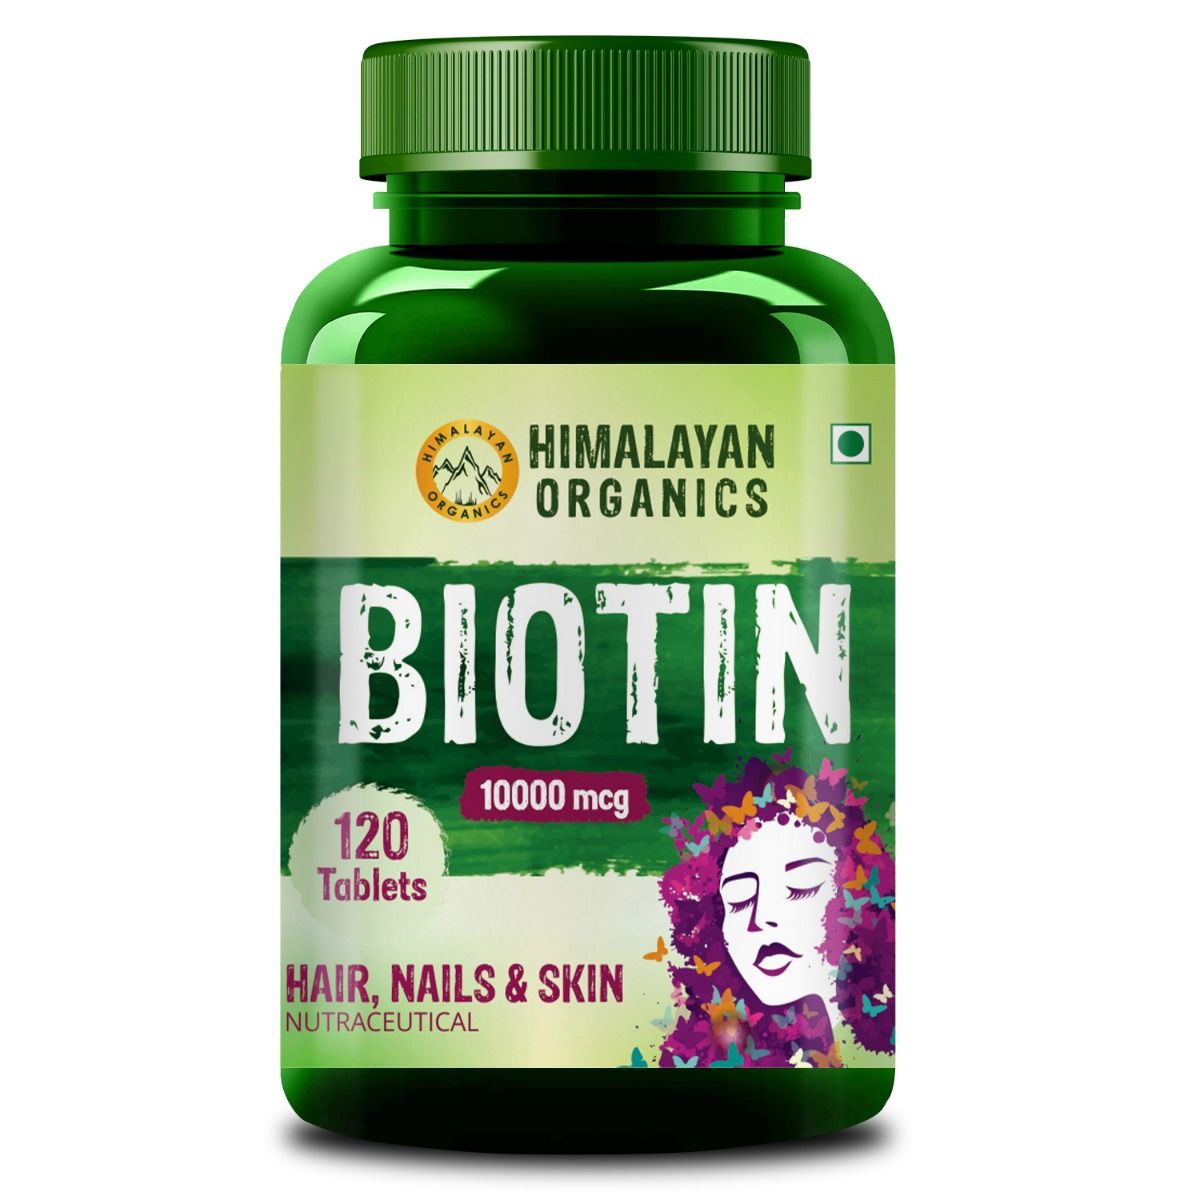 Himalayan Organics Biotin 10000 mcg, 120 Tablets, Pack of 1 